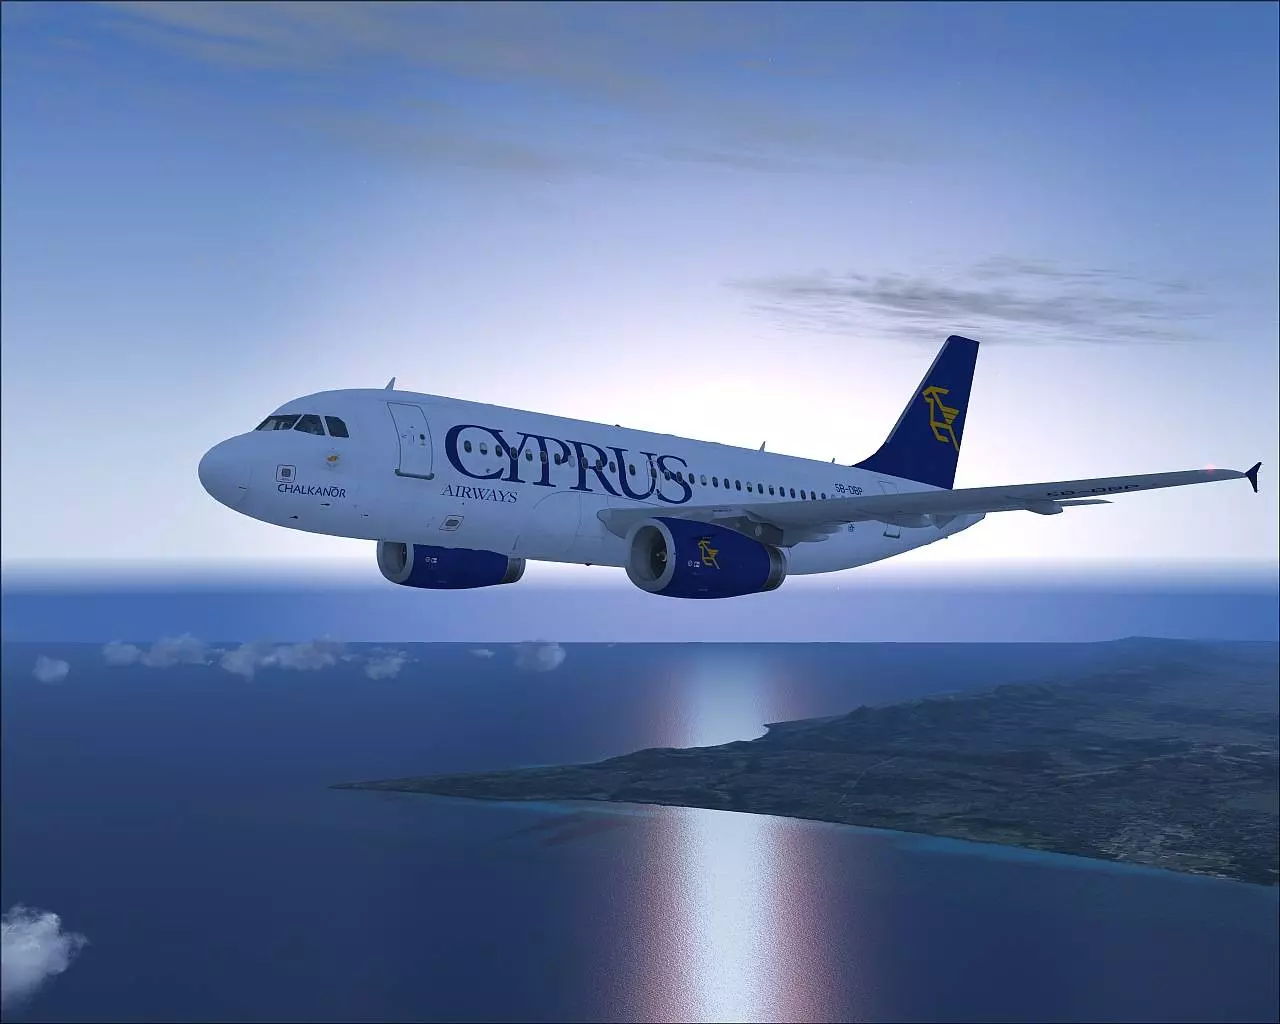 Кипрские авиалиниисодержание а также история [ править ]